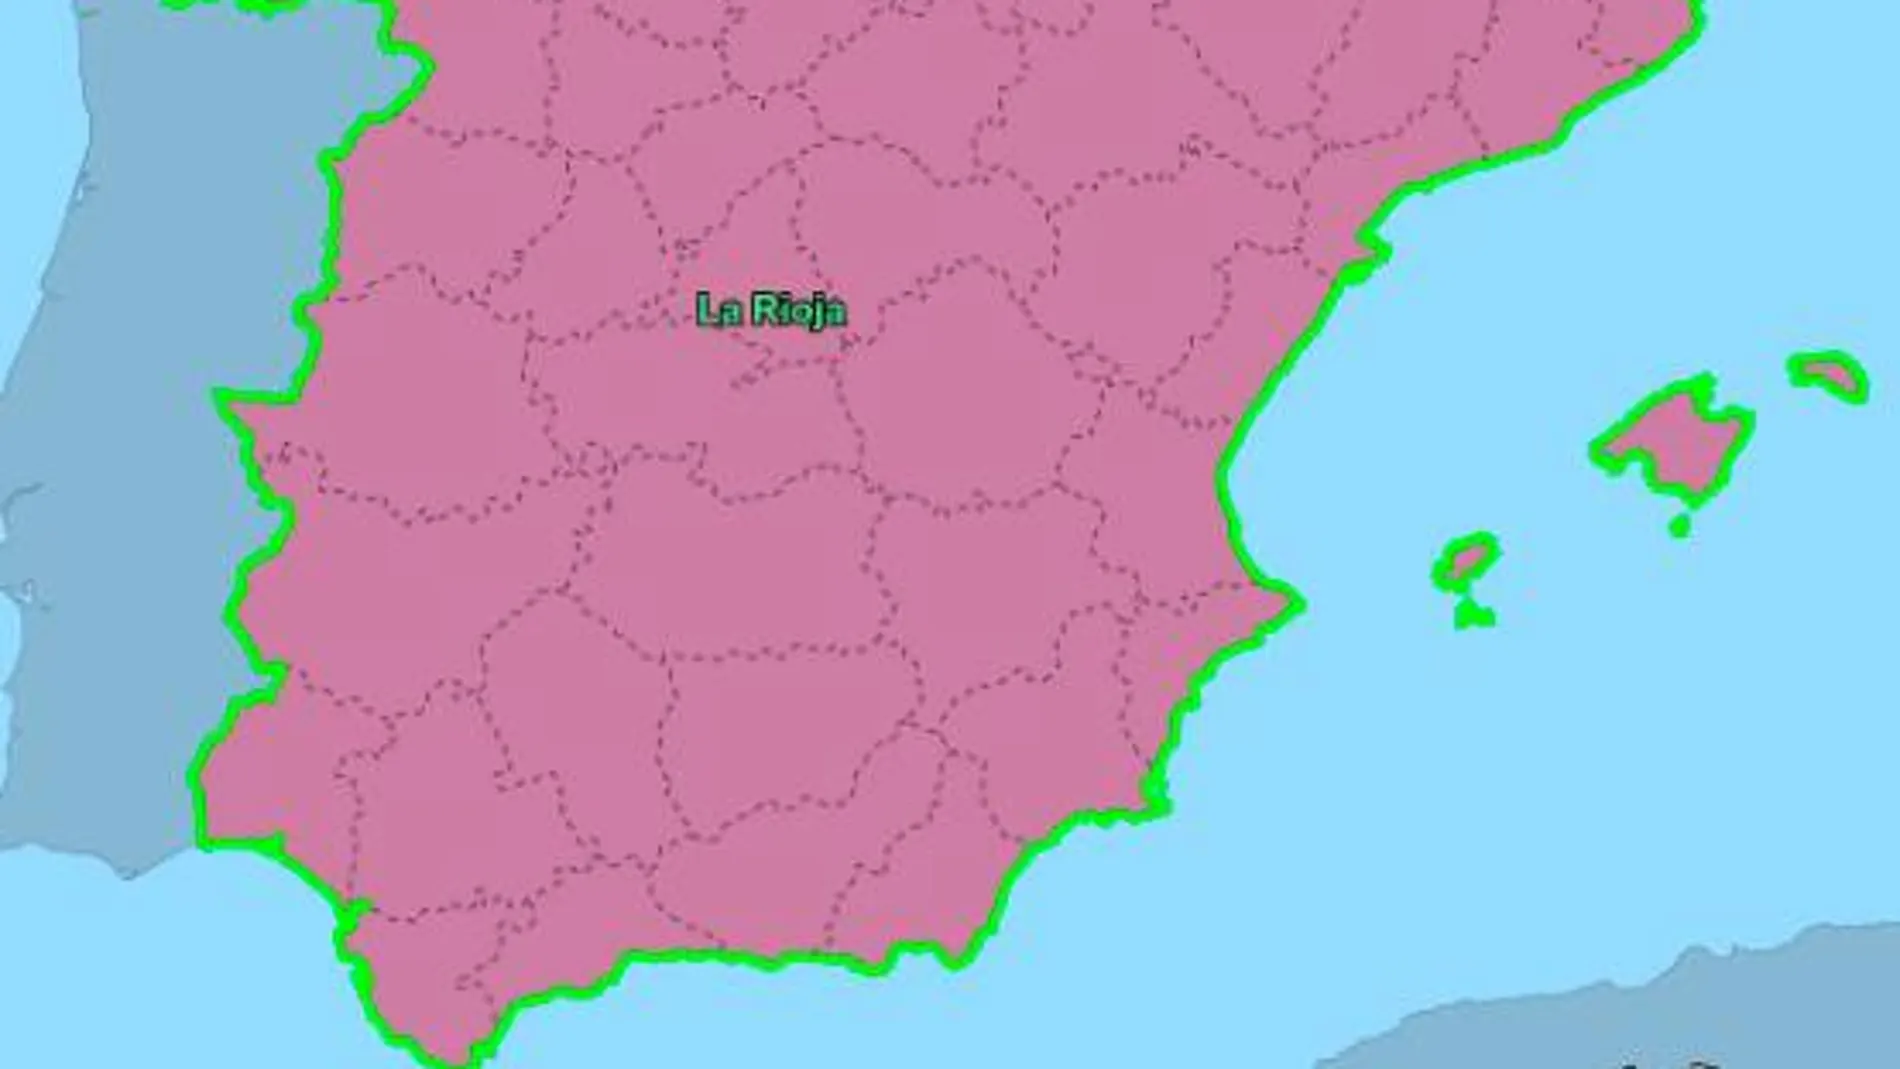 Mapa que demuestra la hegemonía de La Rioja